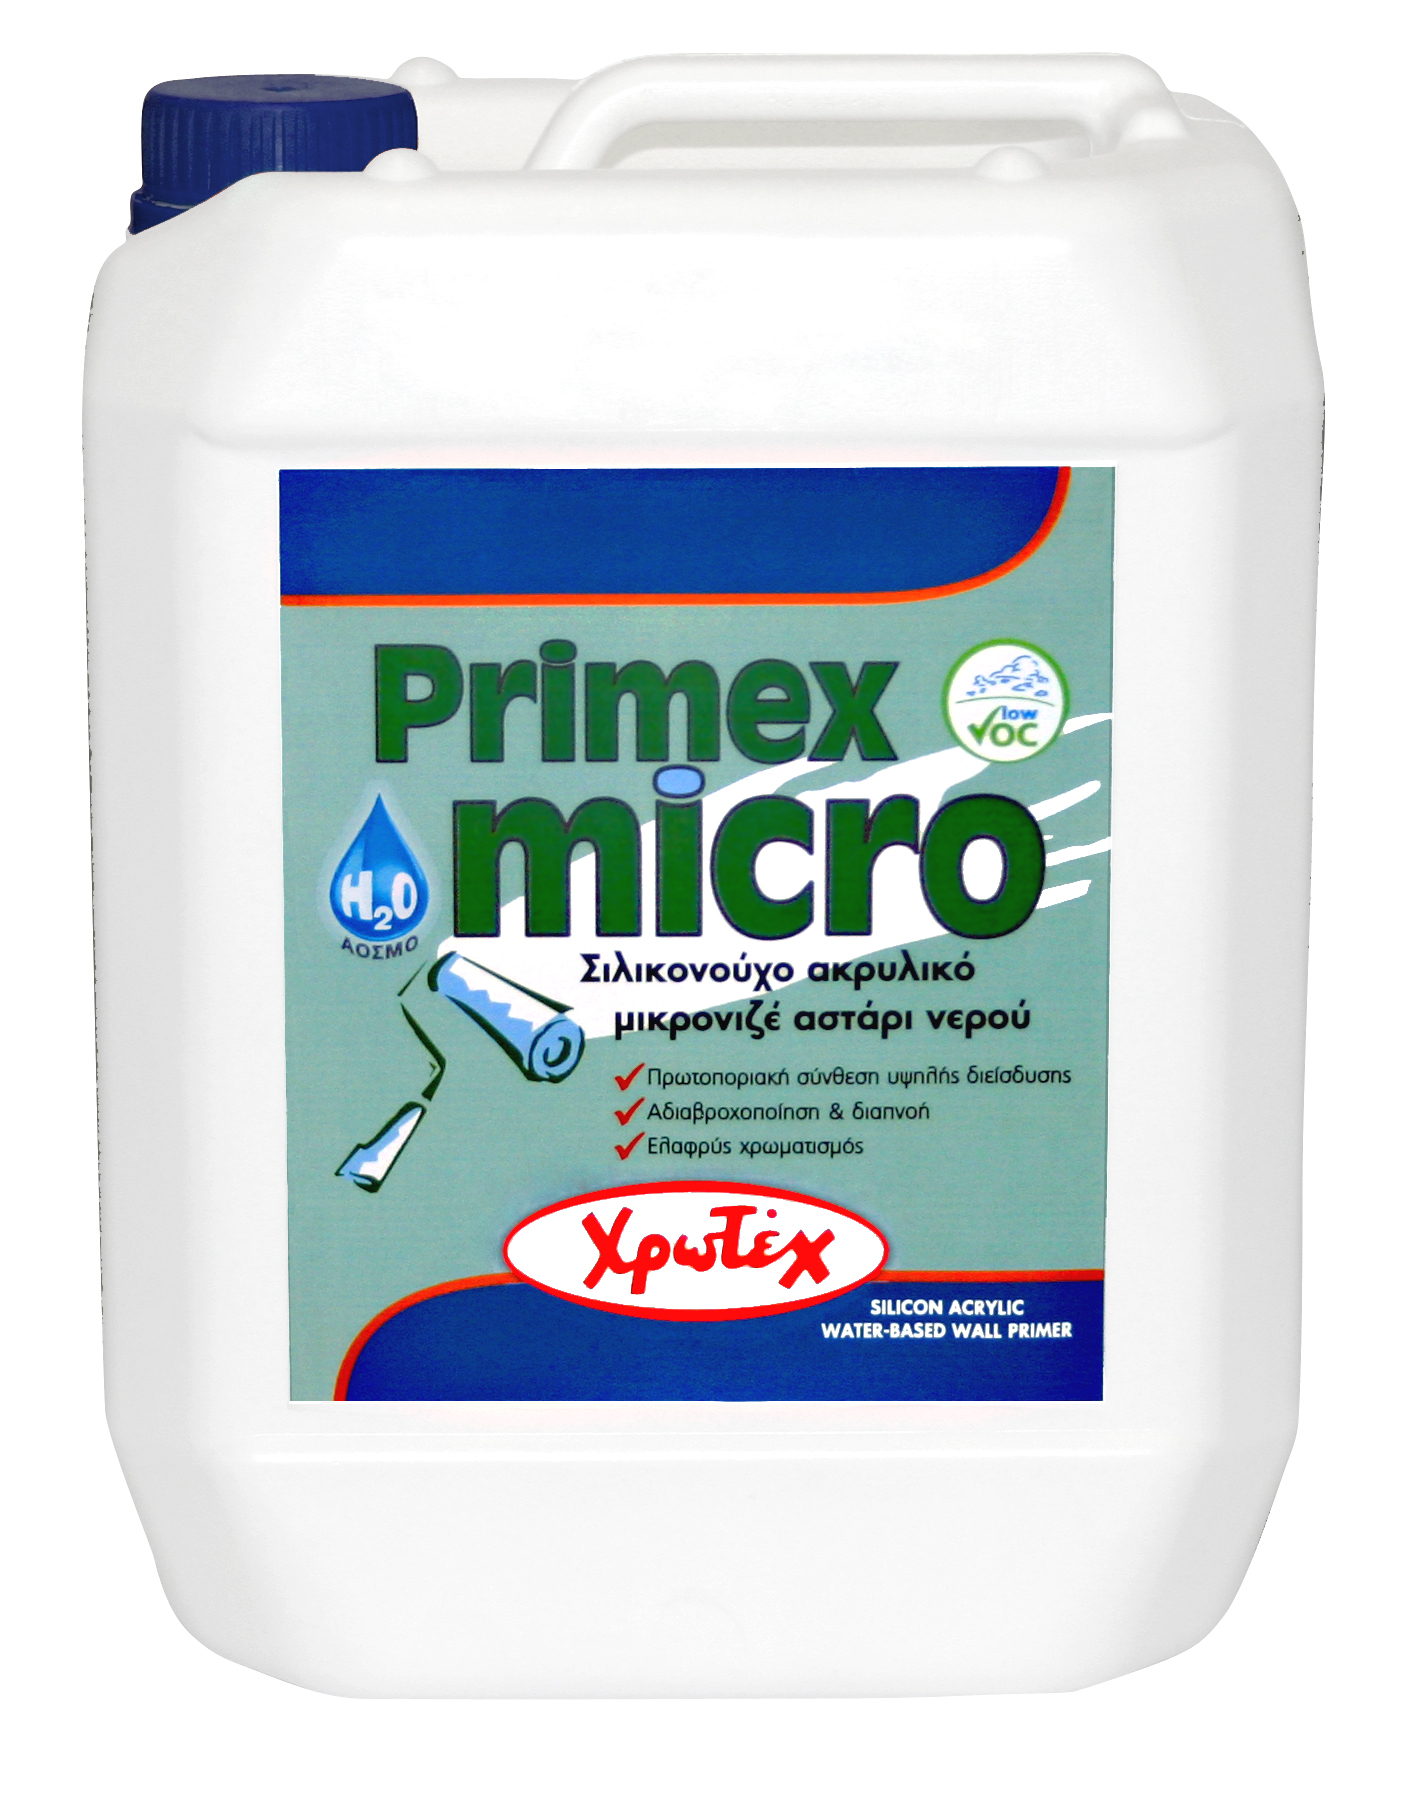 Primex micro